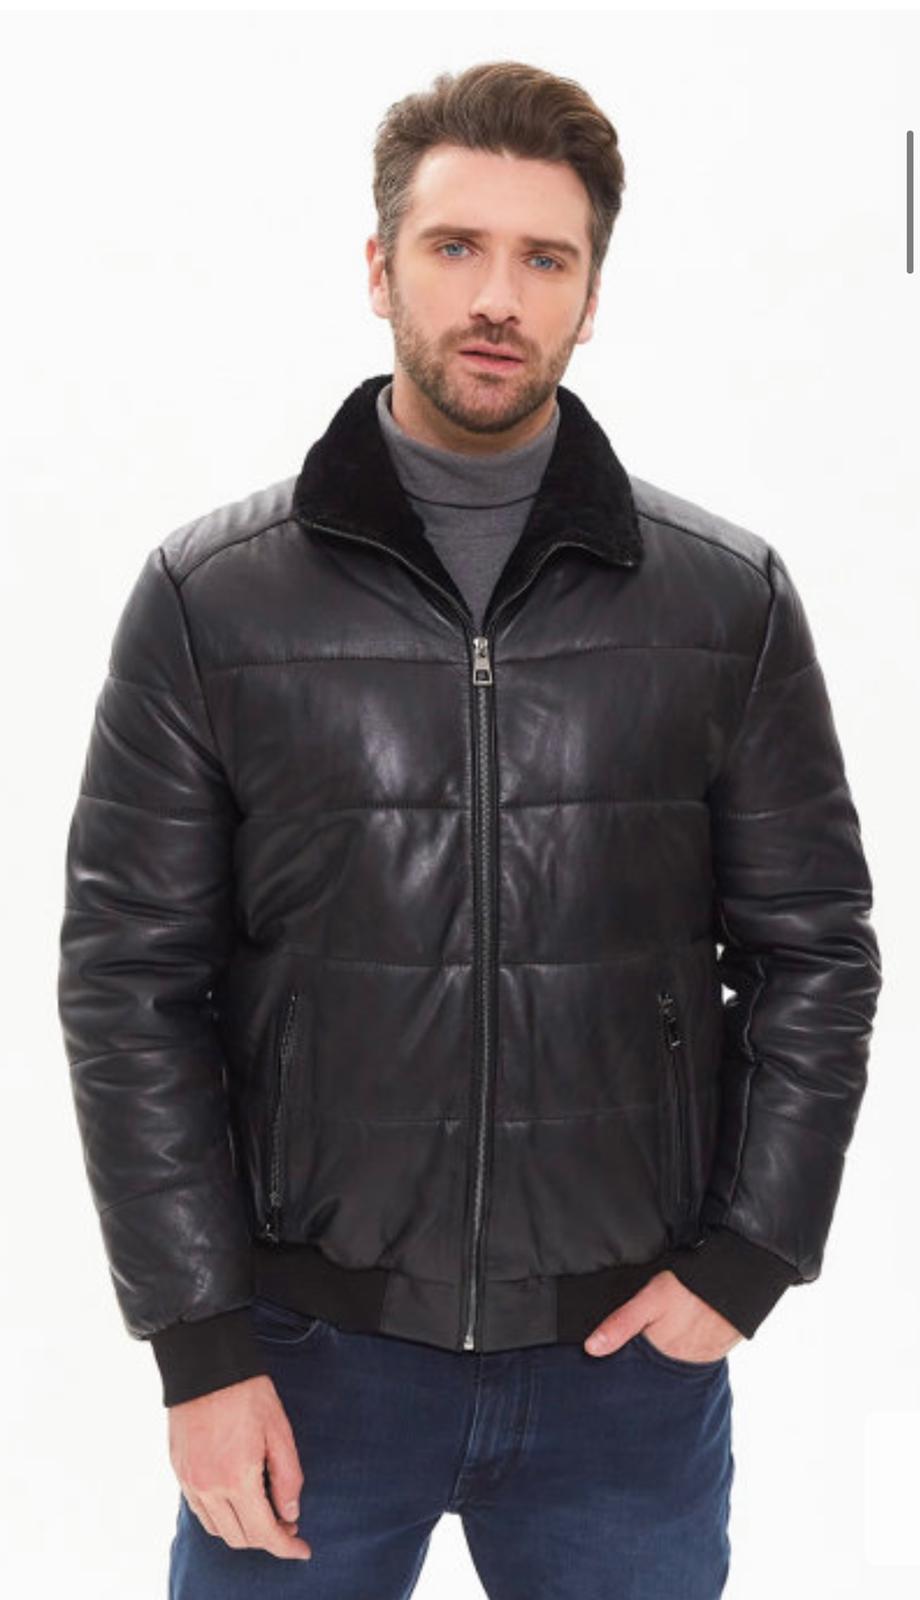 a man in a black jacket